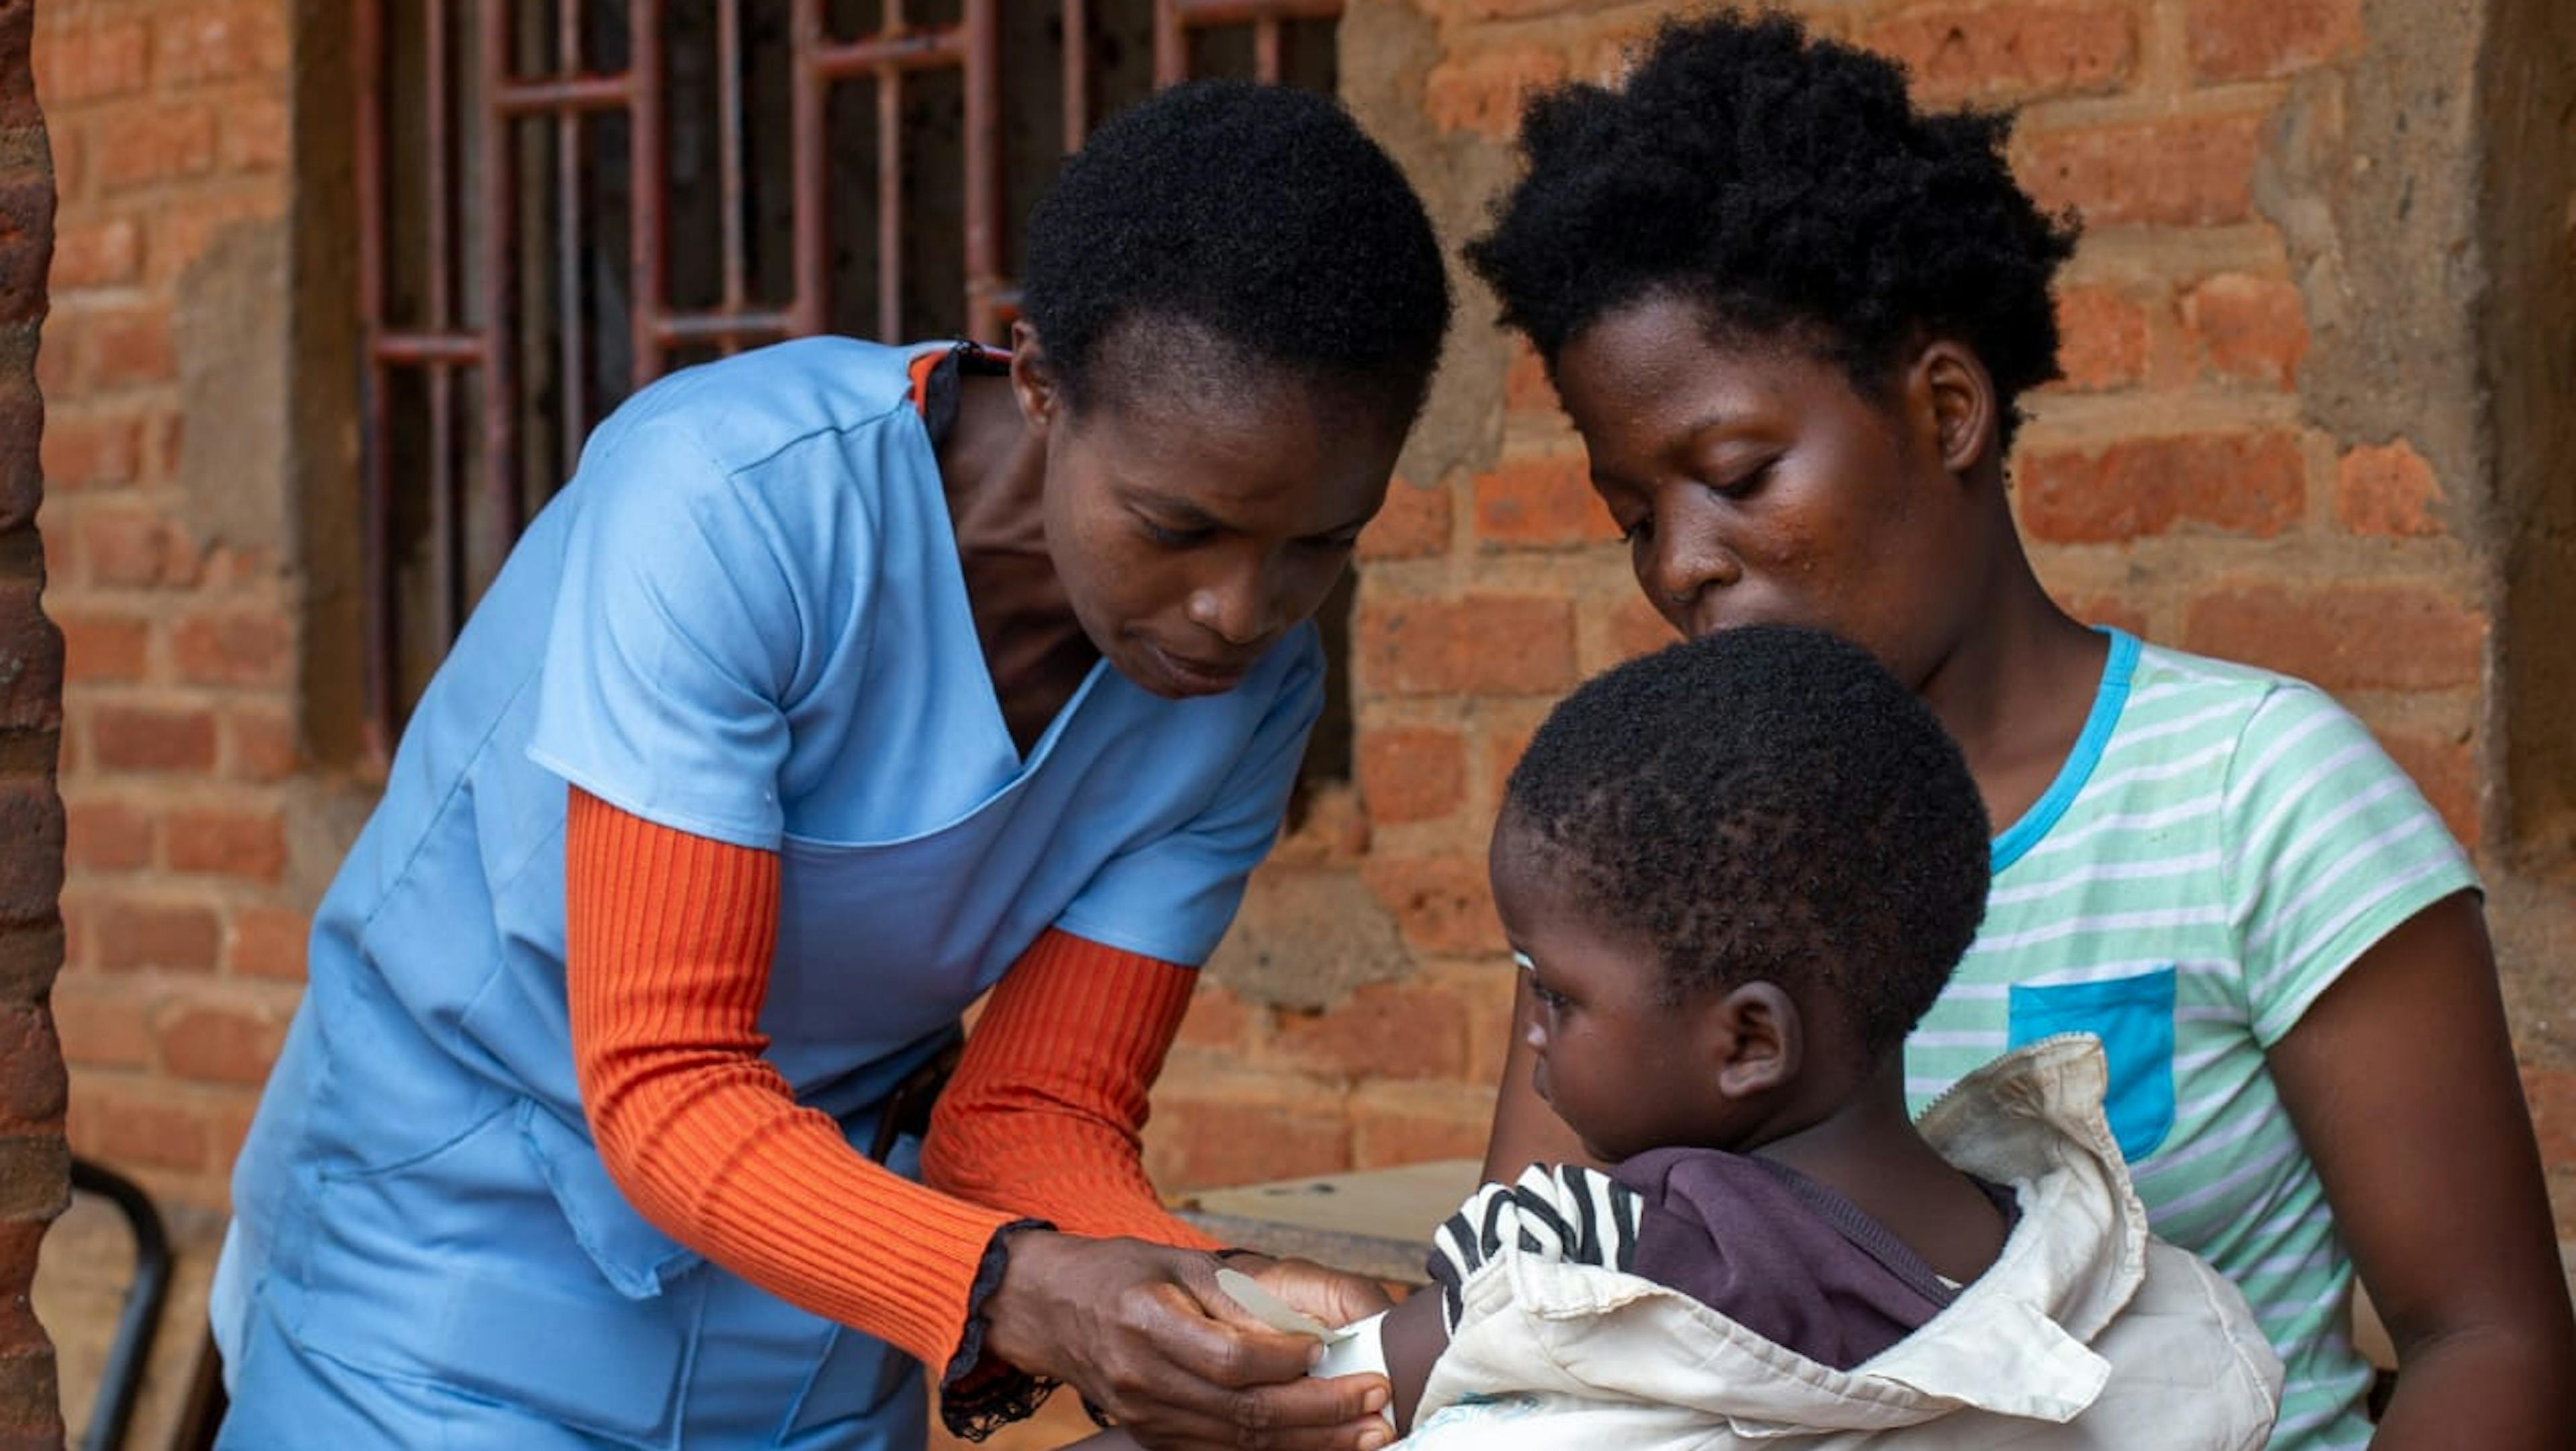 Malawi - un operatore sanitario effettua lo screening della mlanutrizione